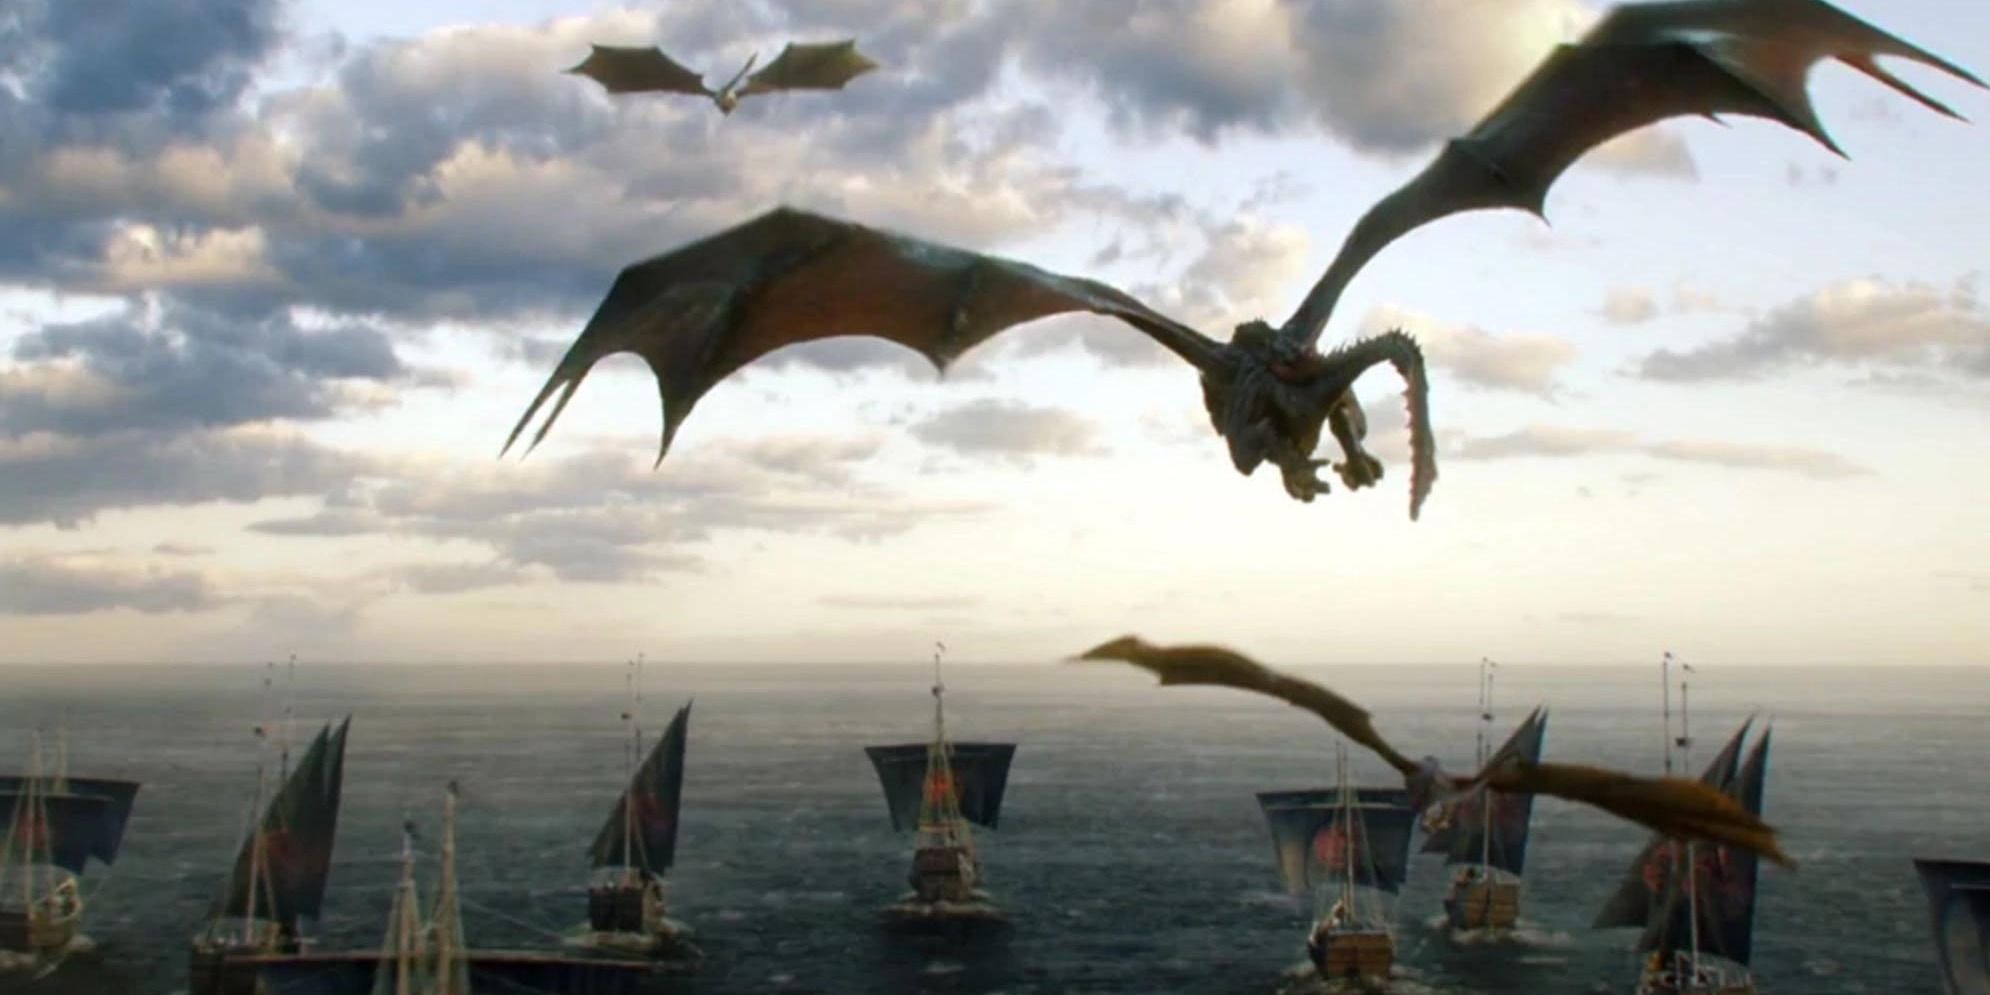 Drogon Rhaegal Viserion Targaryen Fleet Game of Thrones